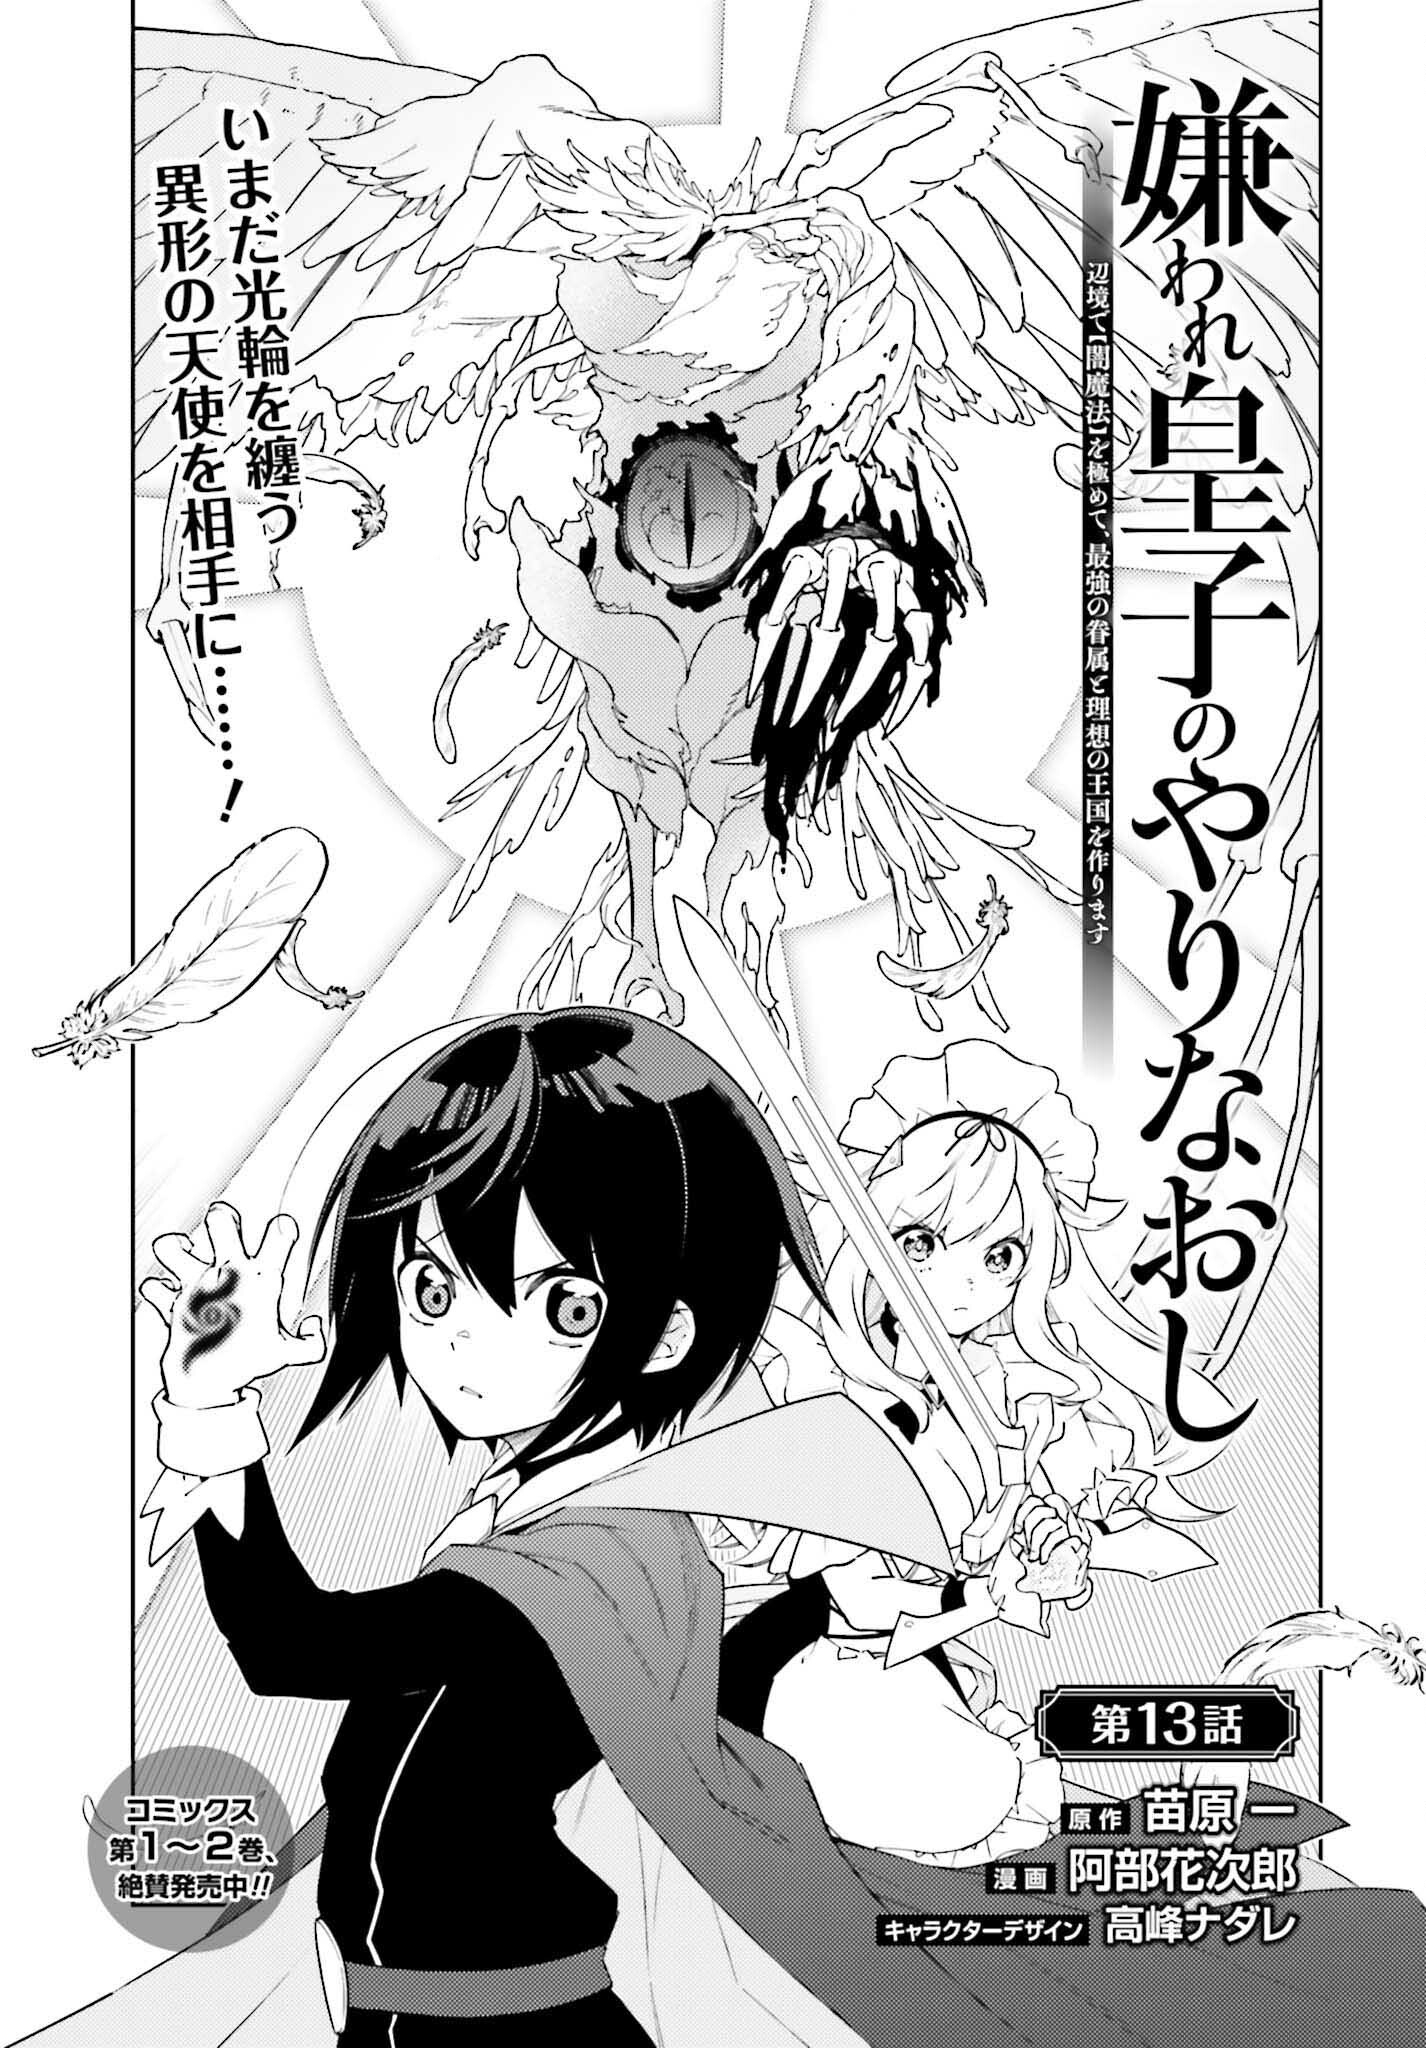 Kiraware Ouji no Yarinaoshi - Chapter 13 - Page 1